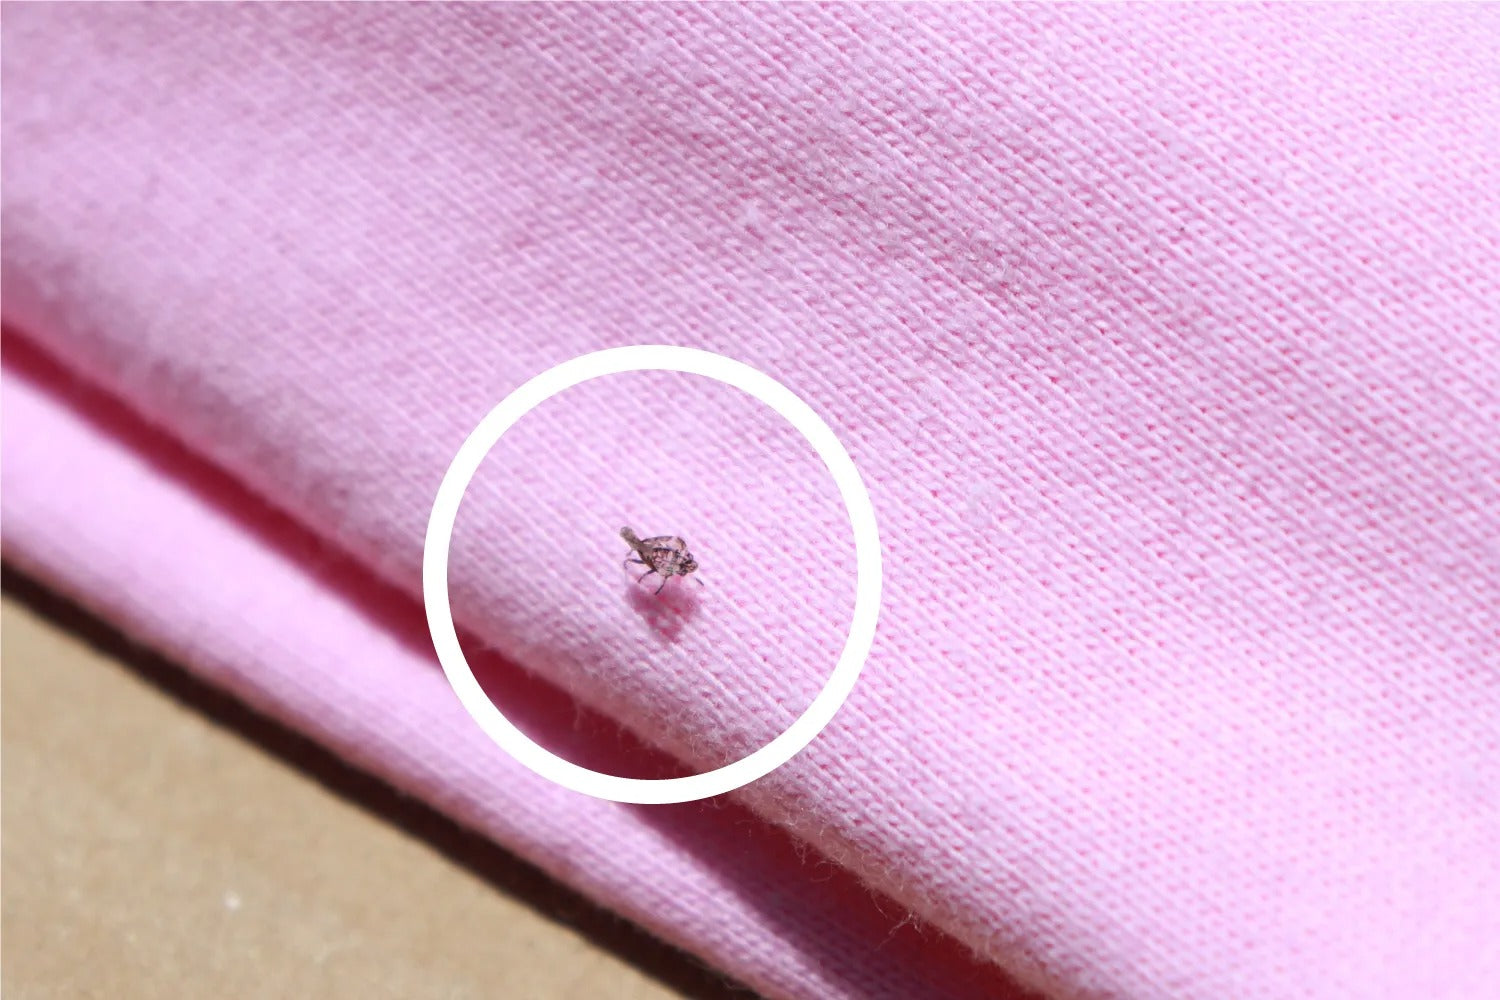 Tシャツ ピンク色 虫